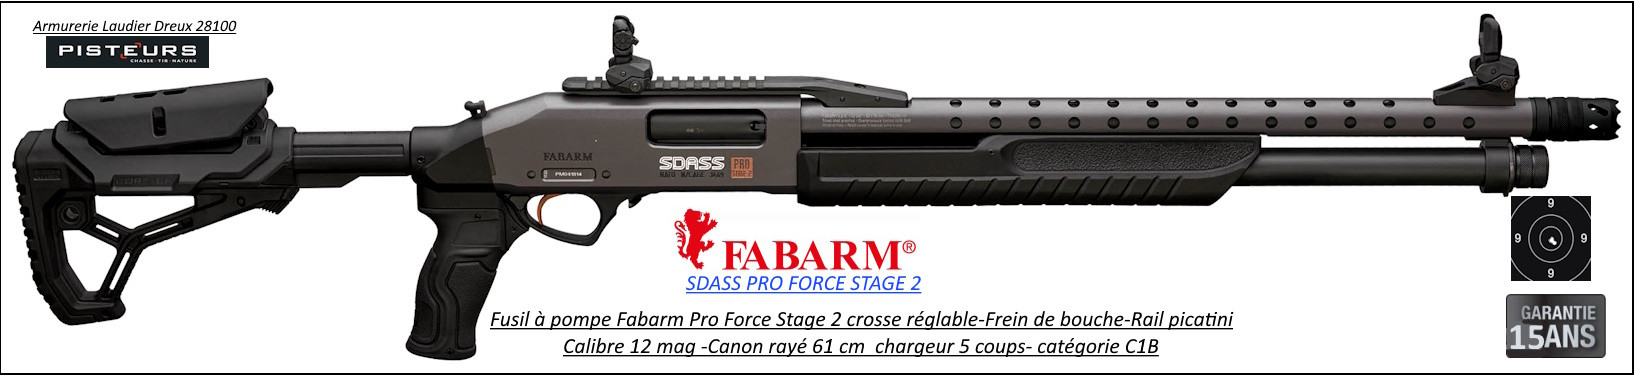 Fusil pompe Fabarm SDASS Pro Forces Stage2 Calibre 12 Magnum-Canon-rayé-61 cm-4+1 coups-Oeilleton micrometrique-Crosse-composite-Frein de bouche-Promotion-Ref FA1970